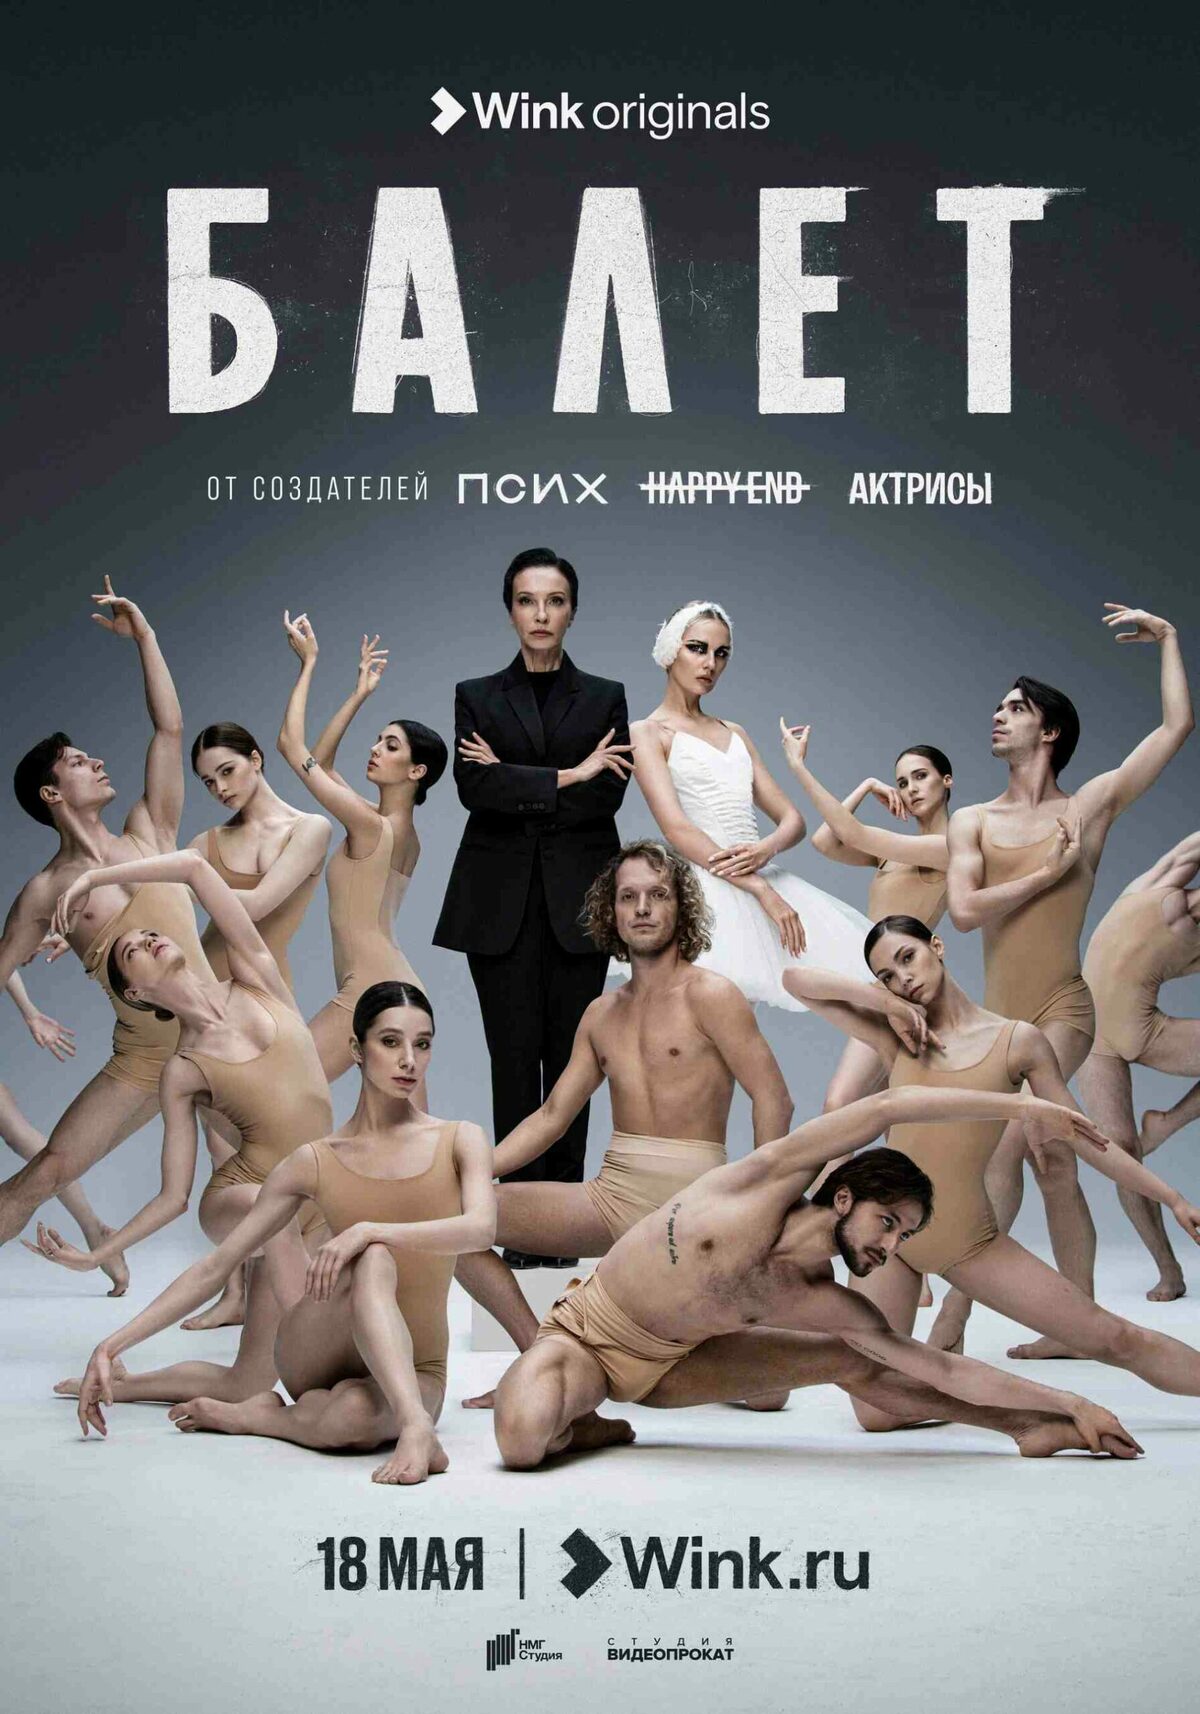 Очередной закулисный сериал «Балет»: какие на этот раз истории в кулуарах театра, и почему опыт прошлых шоу создателей так важен?